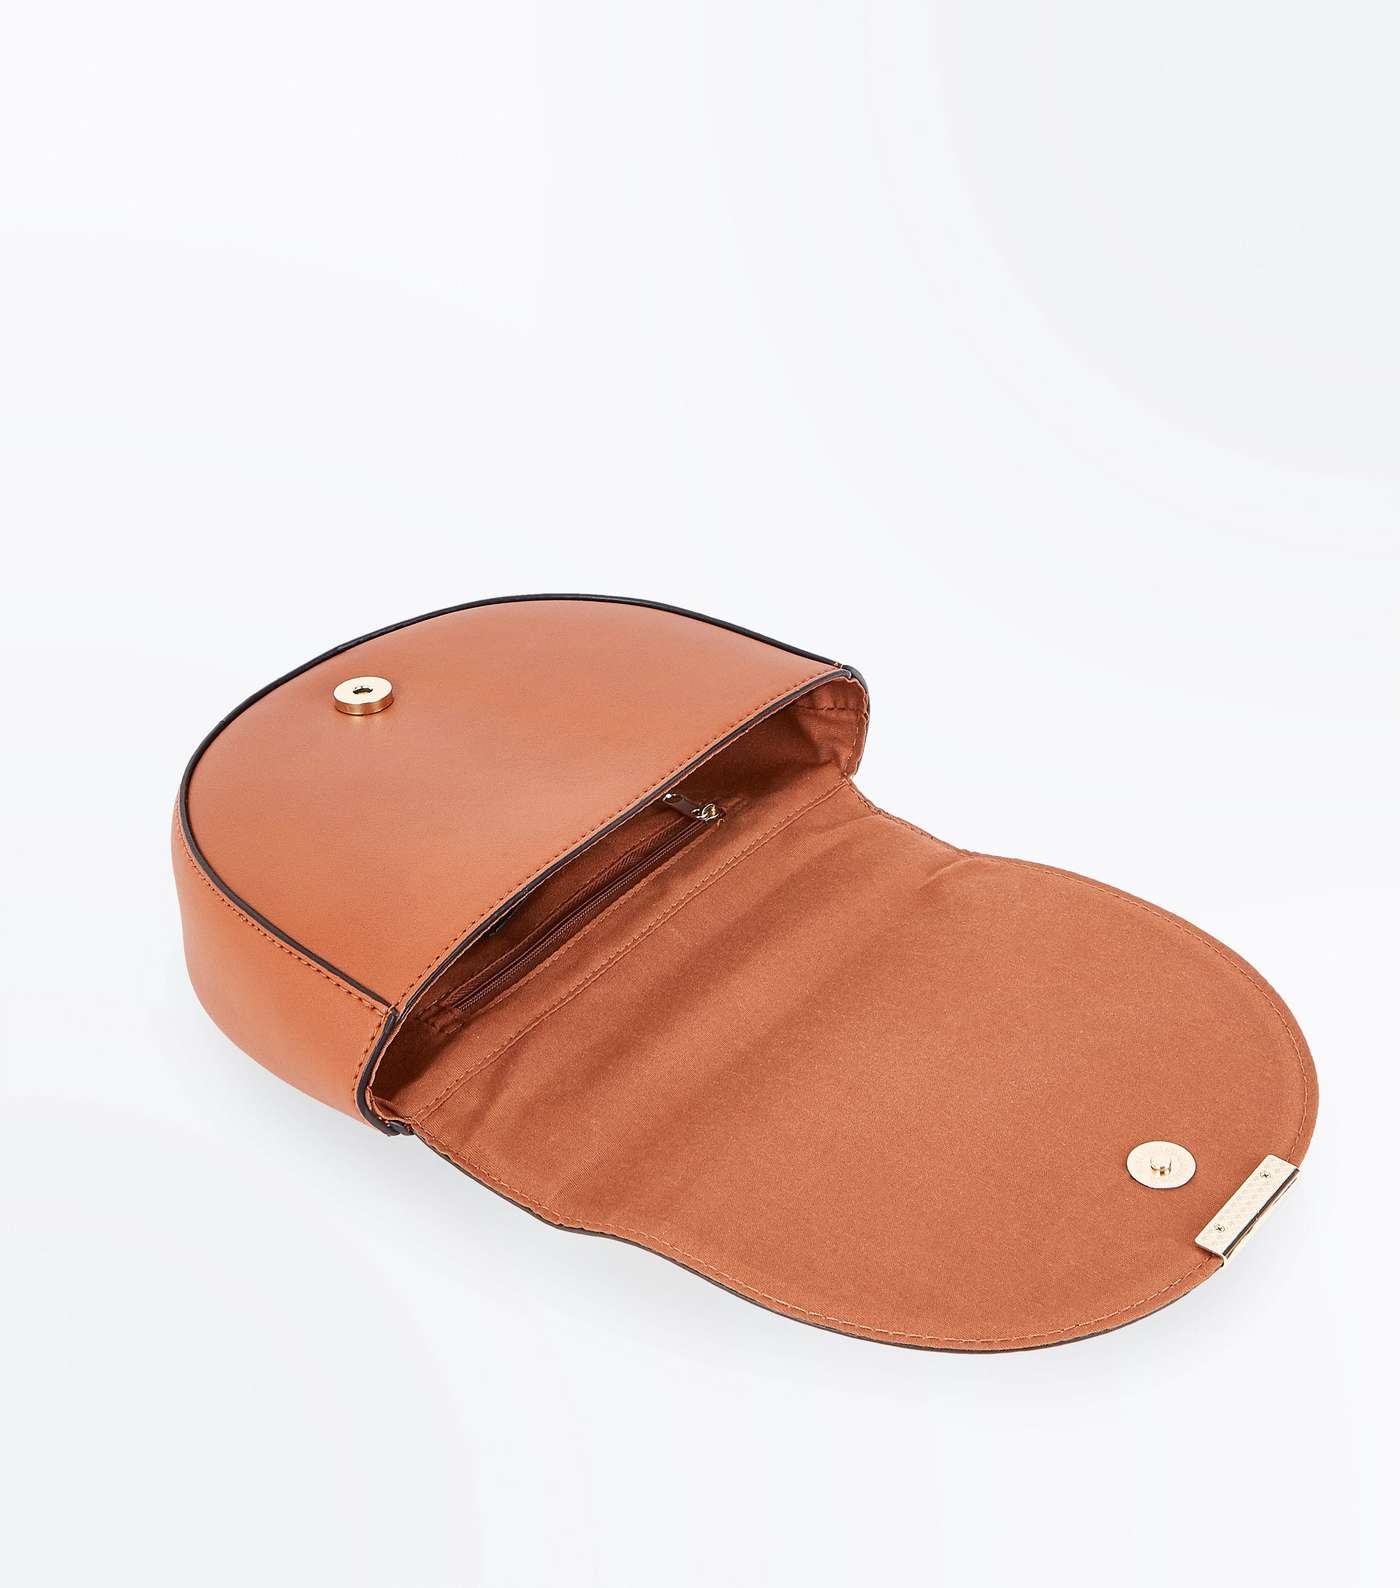 Tan Curved Metal Handle Cross Body Bag Image 6